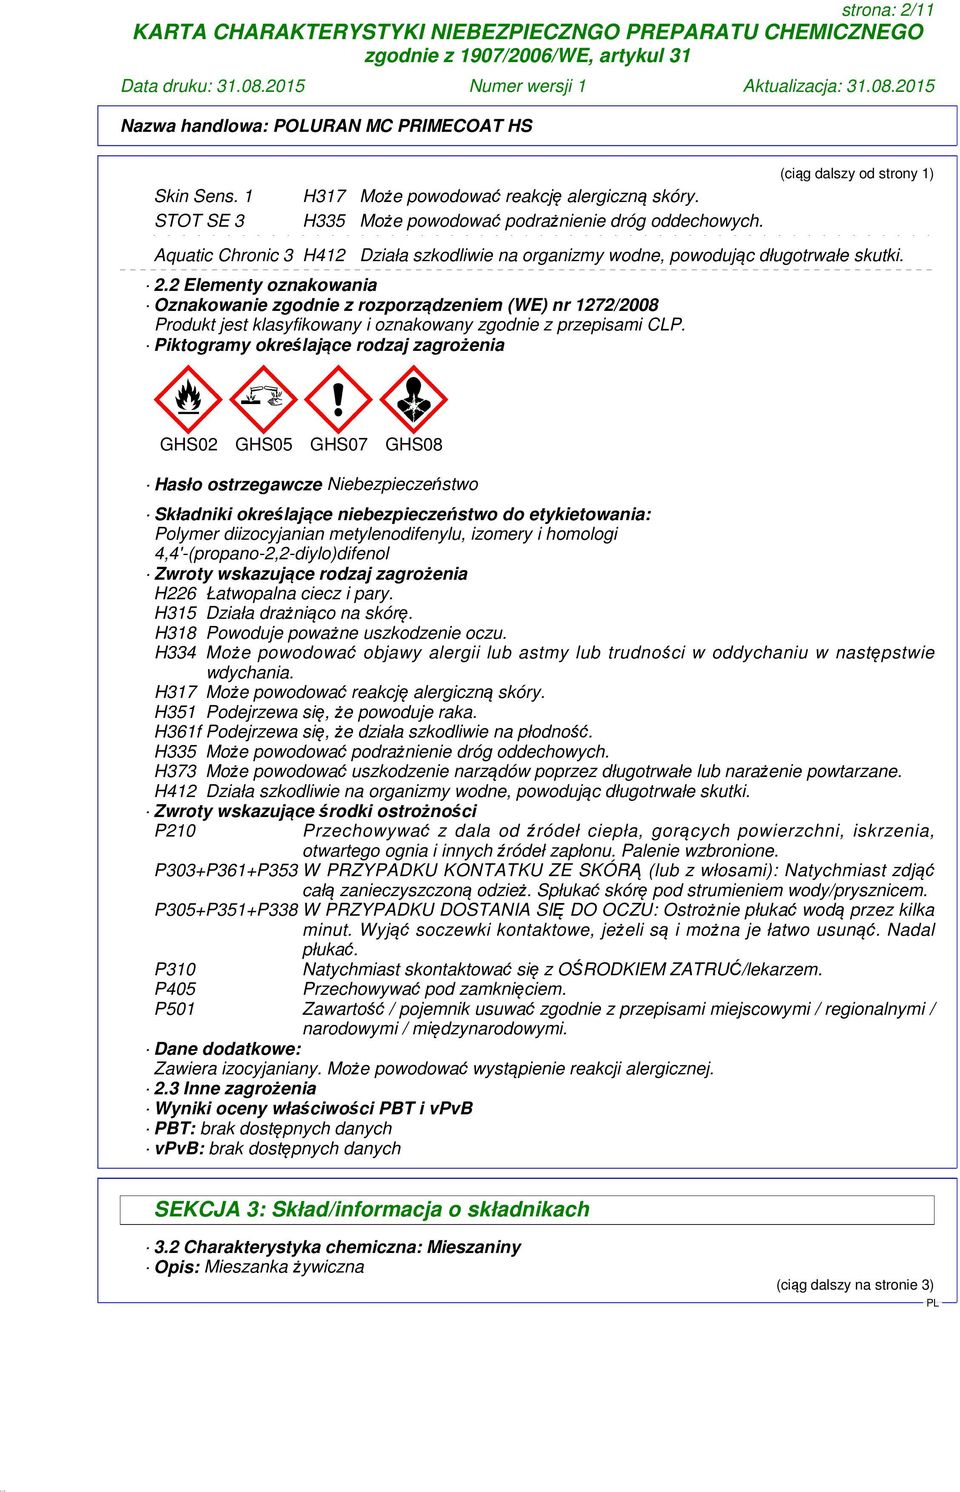 2 Elementy oznakowania Oznakowanie zgodnie z rozporządzeniem (WE) nr 1272/2008 Produkt jest klasyfikowany i oznakowany zgodnie z przepisami CLP.